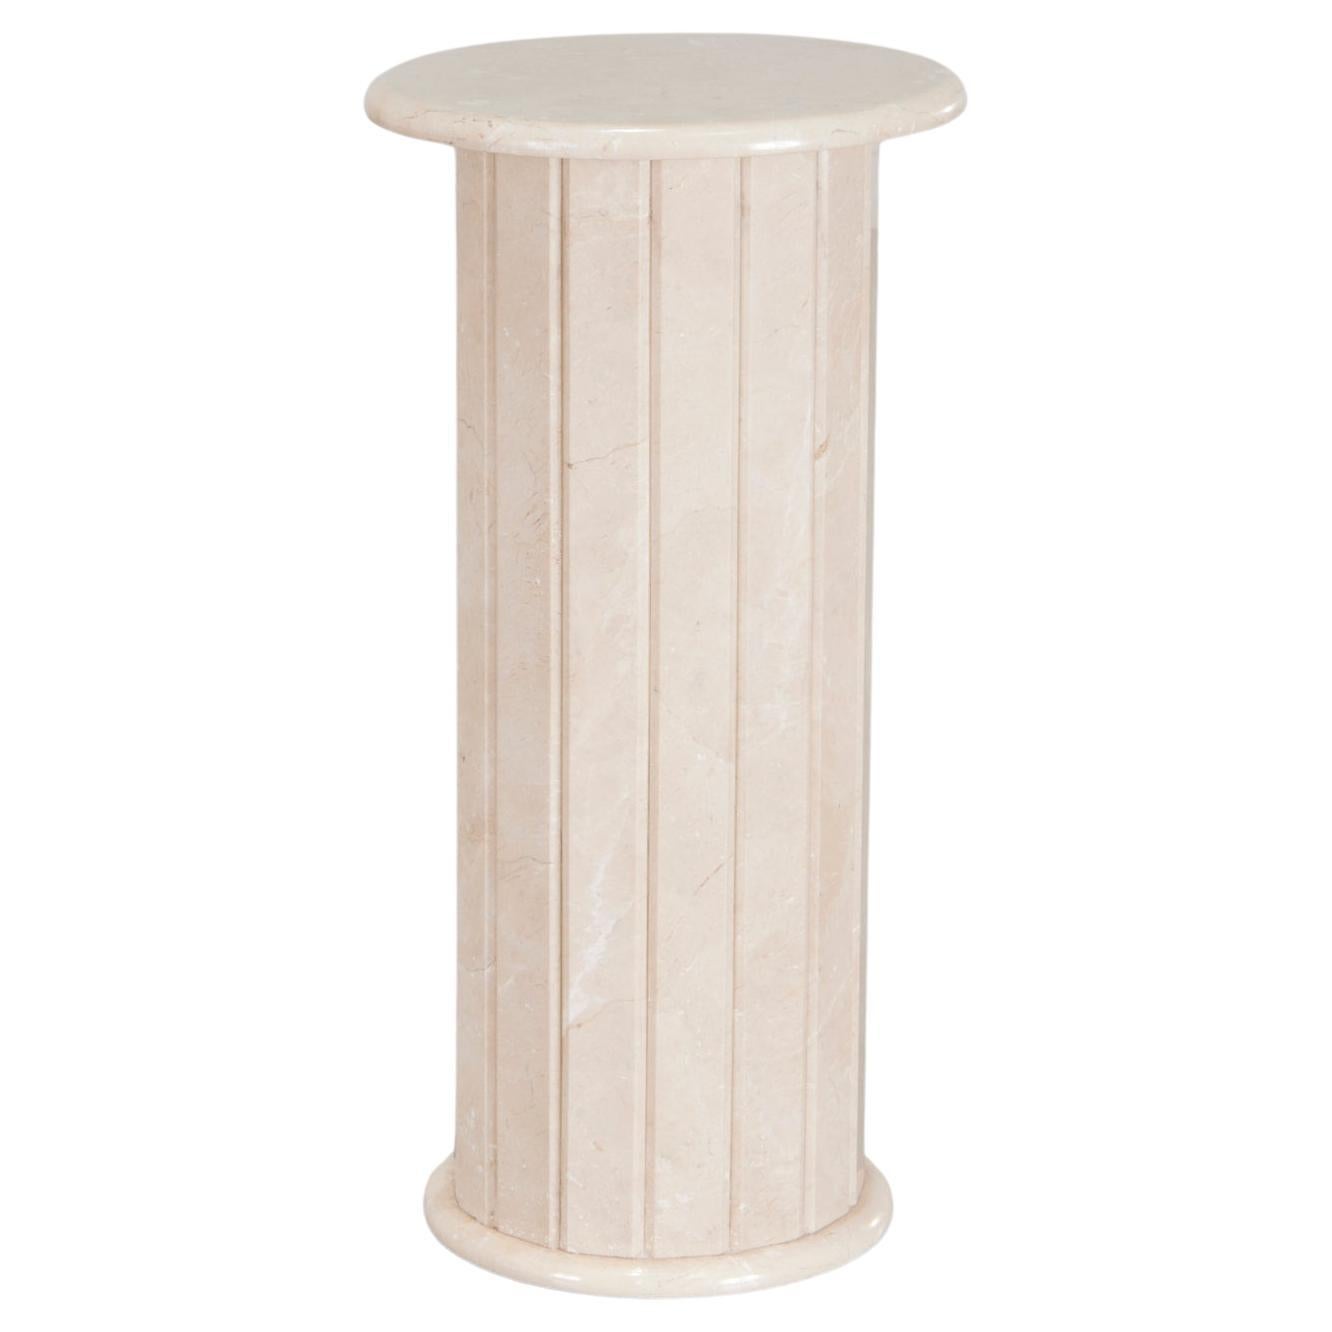 Modernes, poliertes, geriffeltes Travertin-Säulen-Podest in weichen, blassen Erdtönen